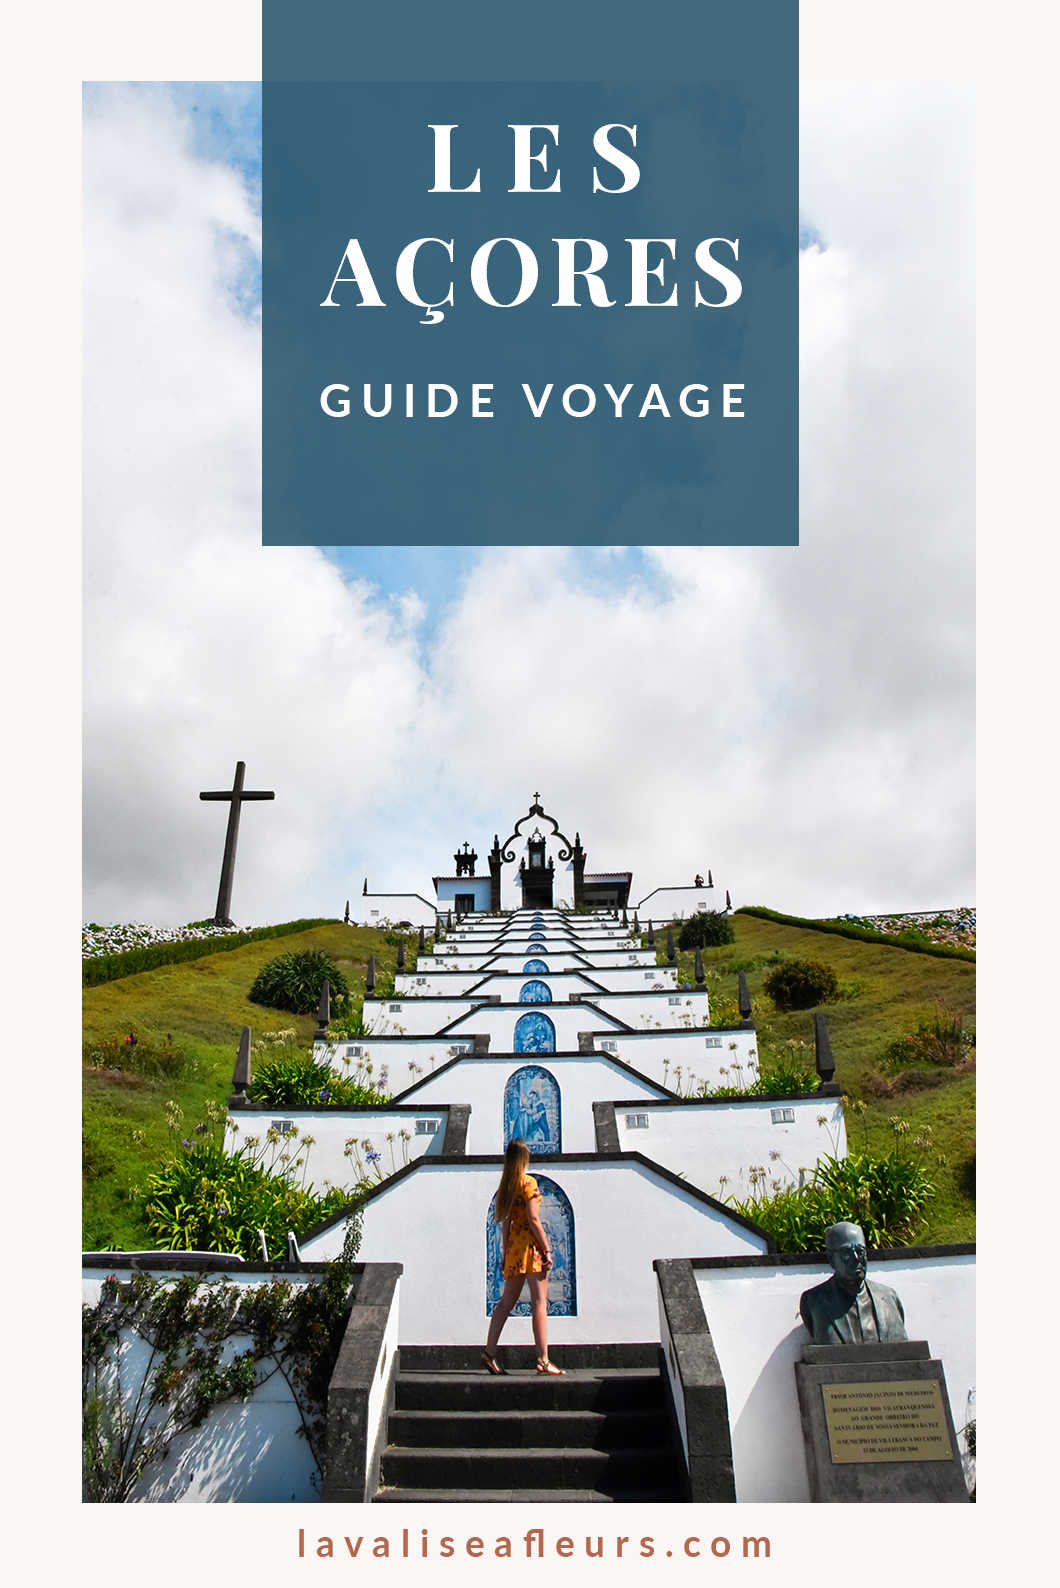 Guide voyage des Açores